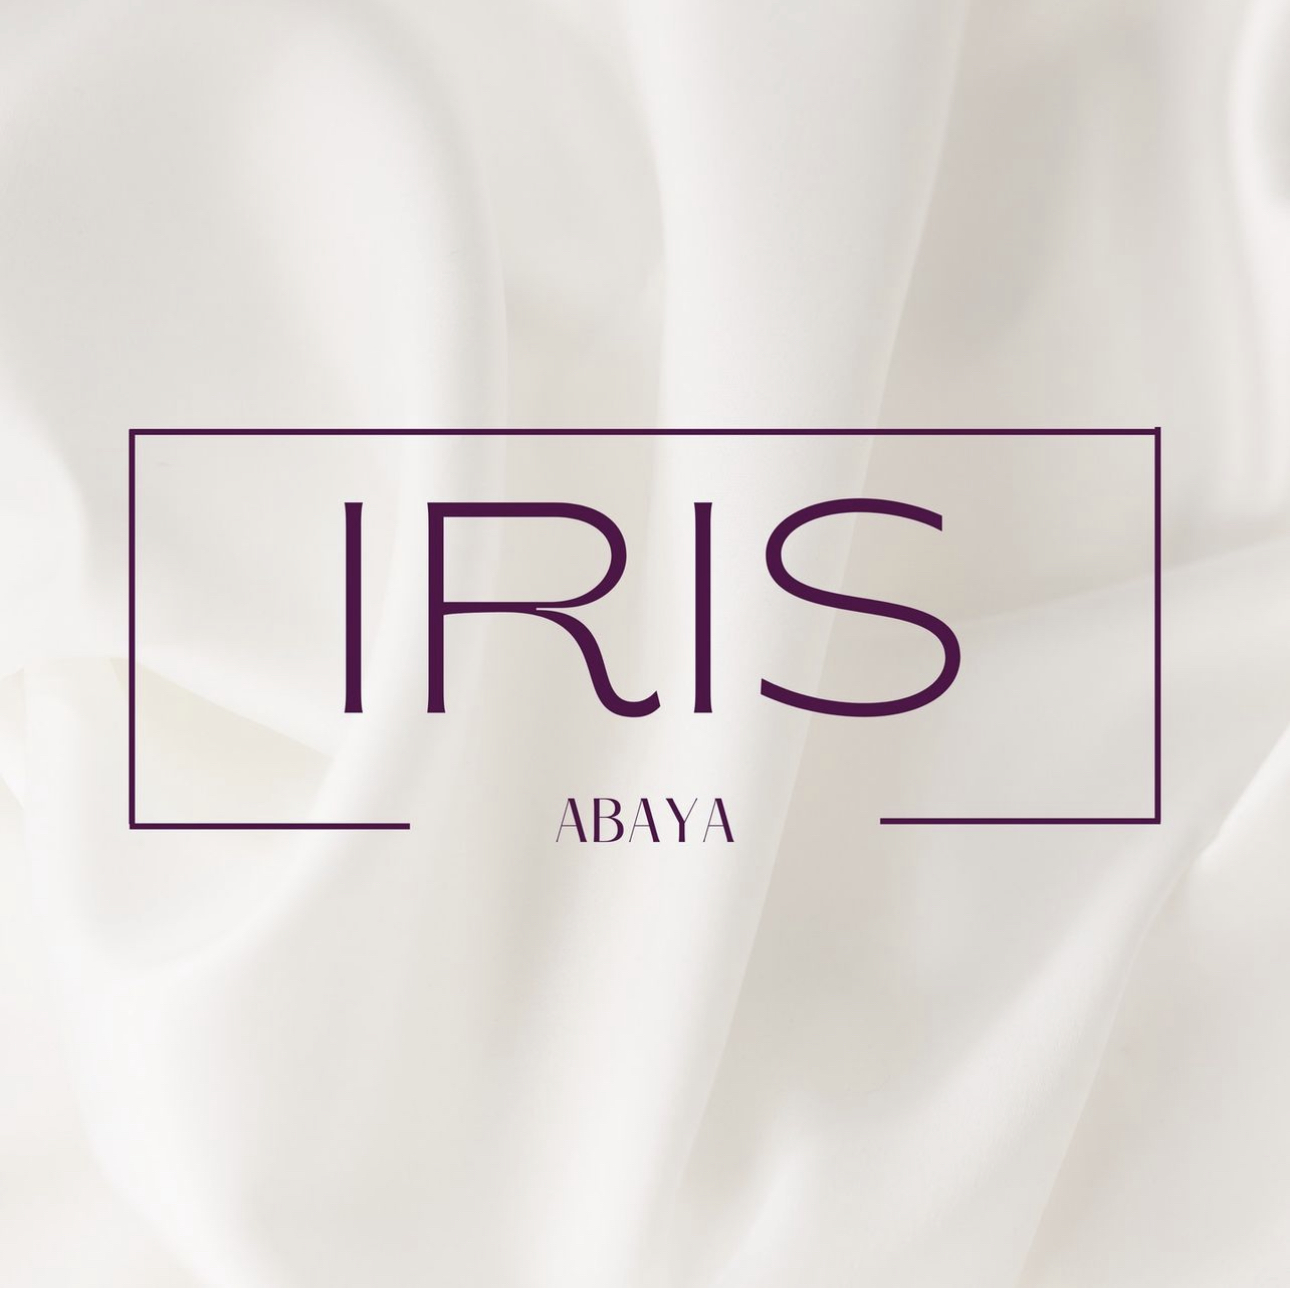 Iris abaya